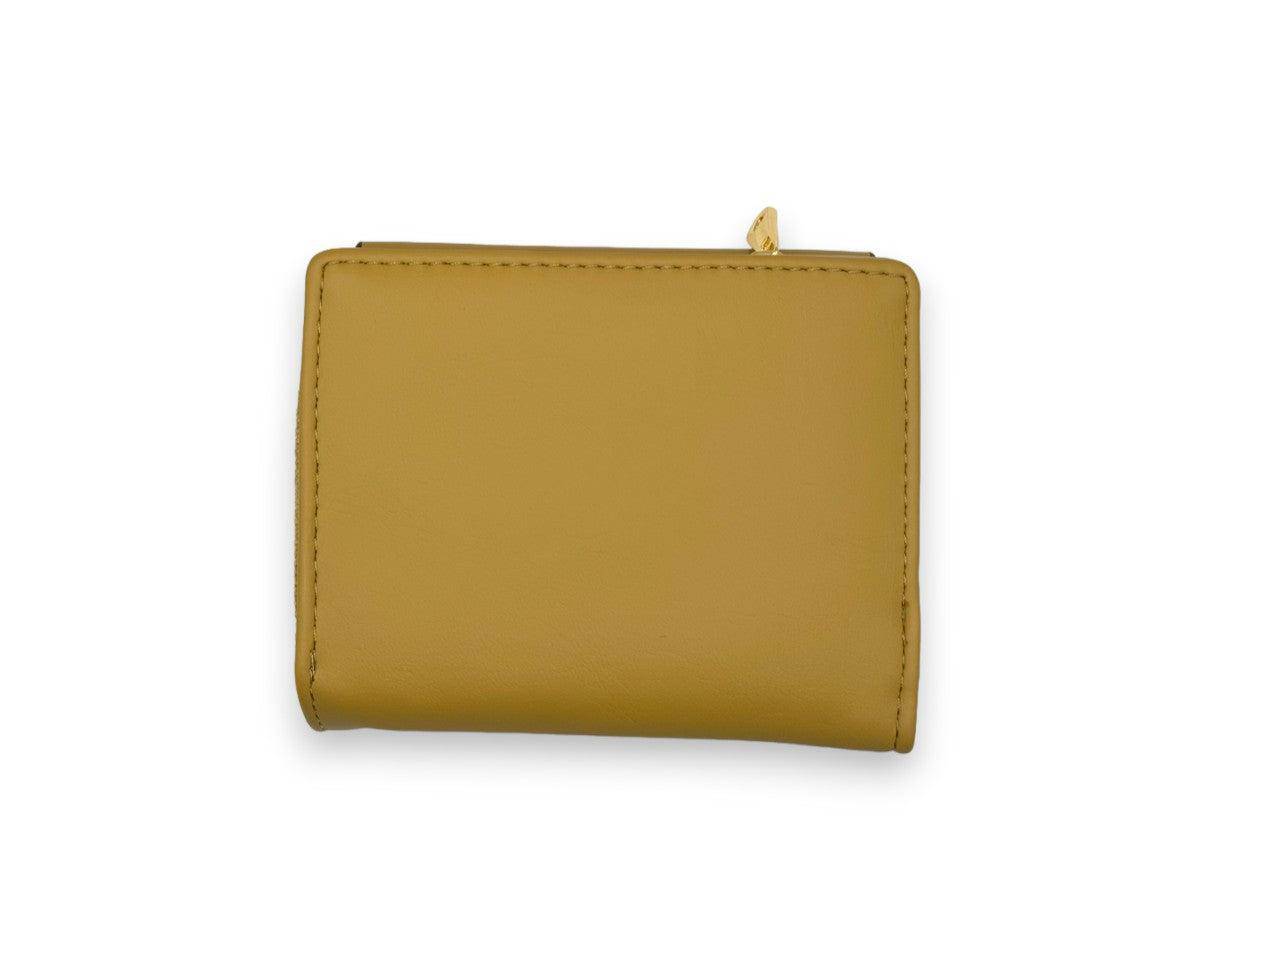 محفظة يد نسائية باللون البيج وبتصميم أنيق ومختلف - KSA